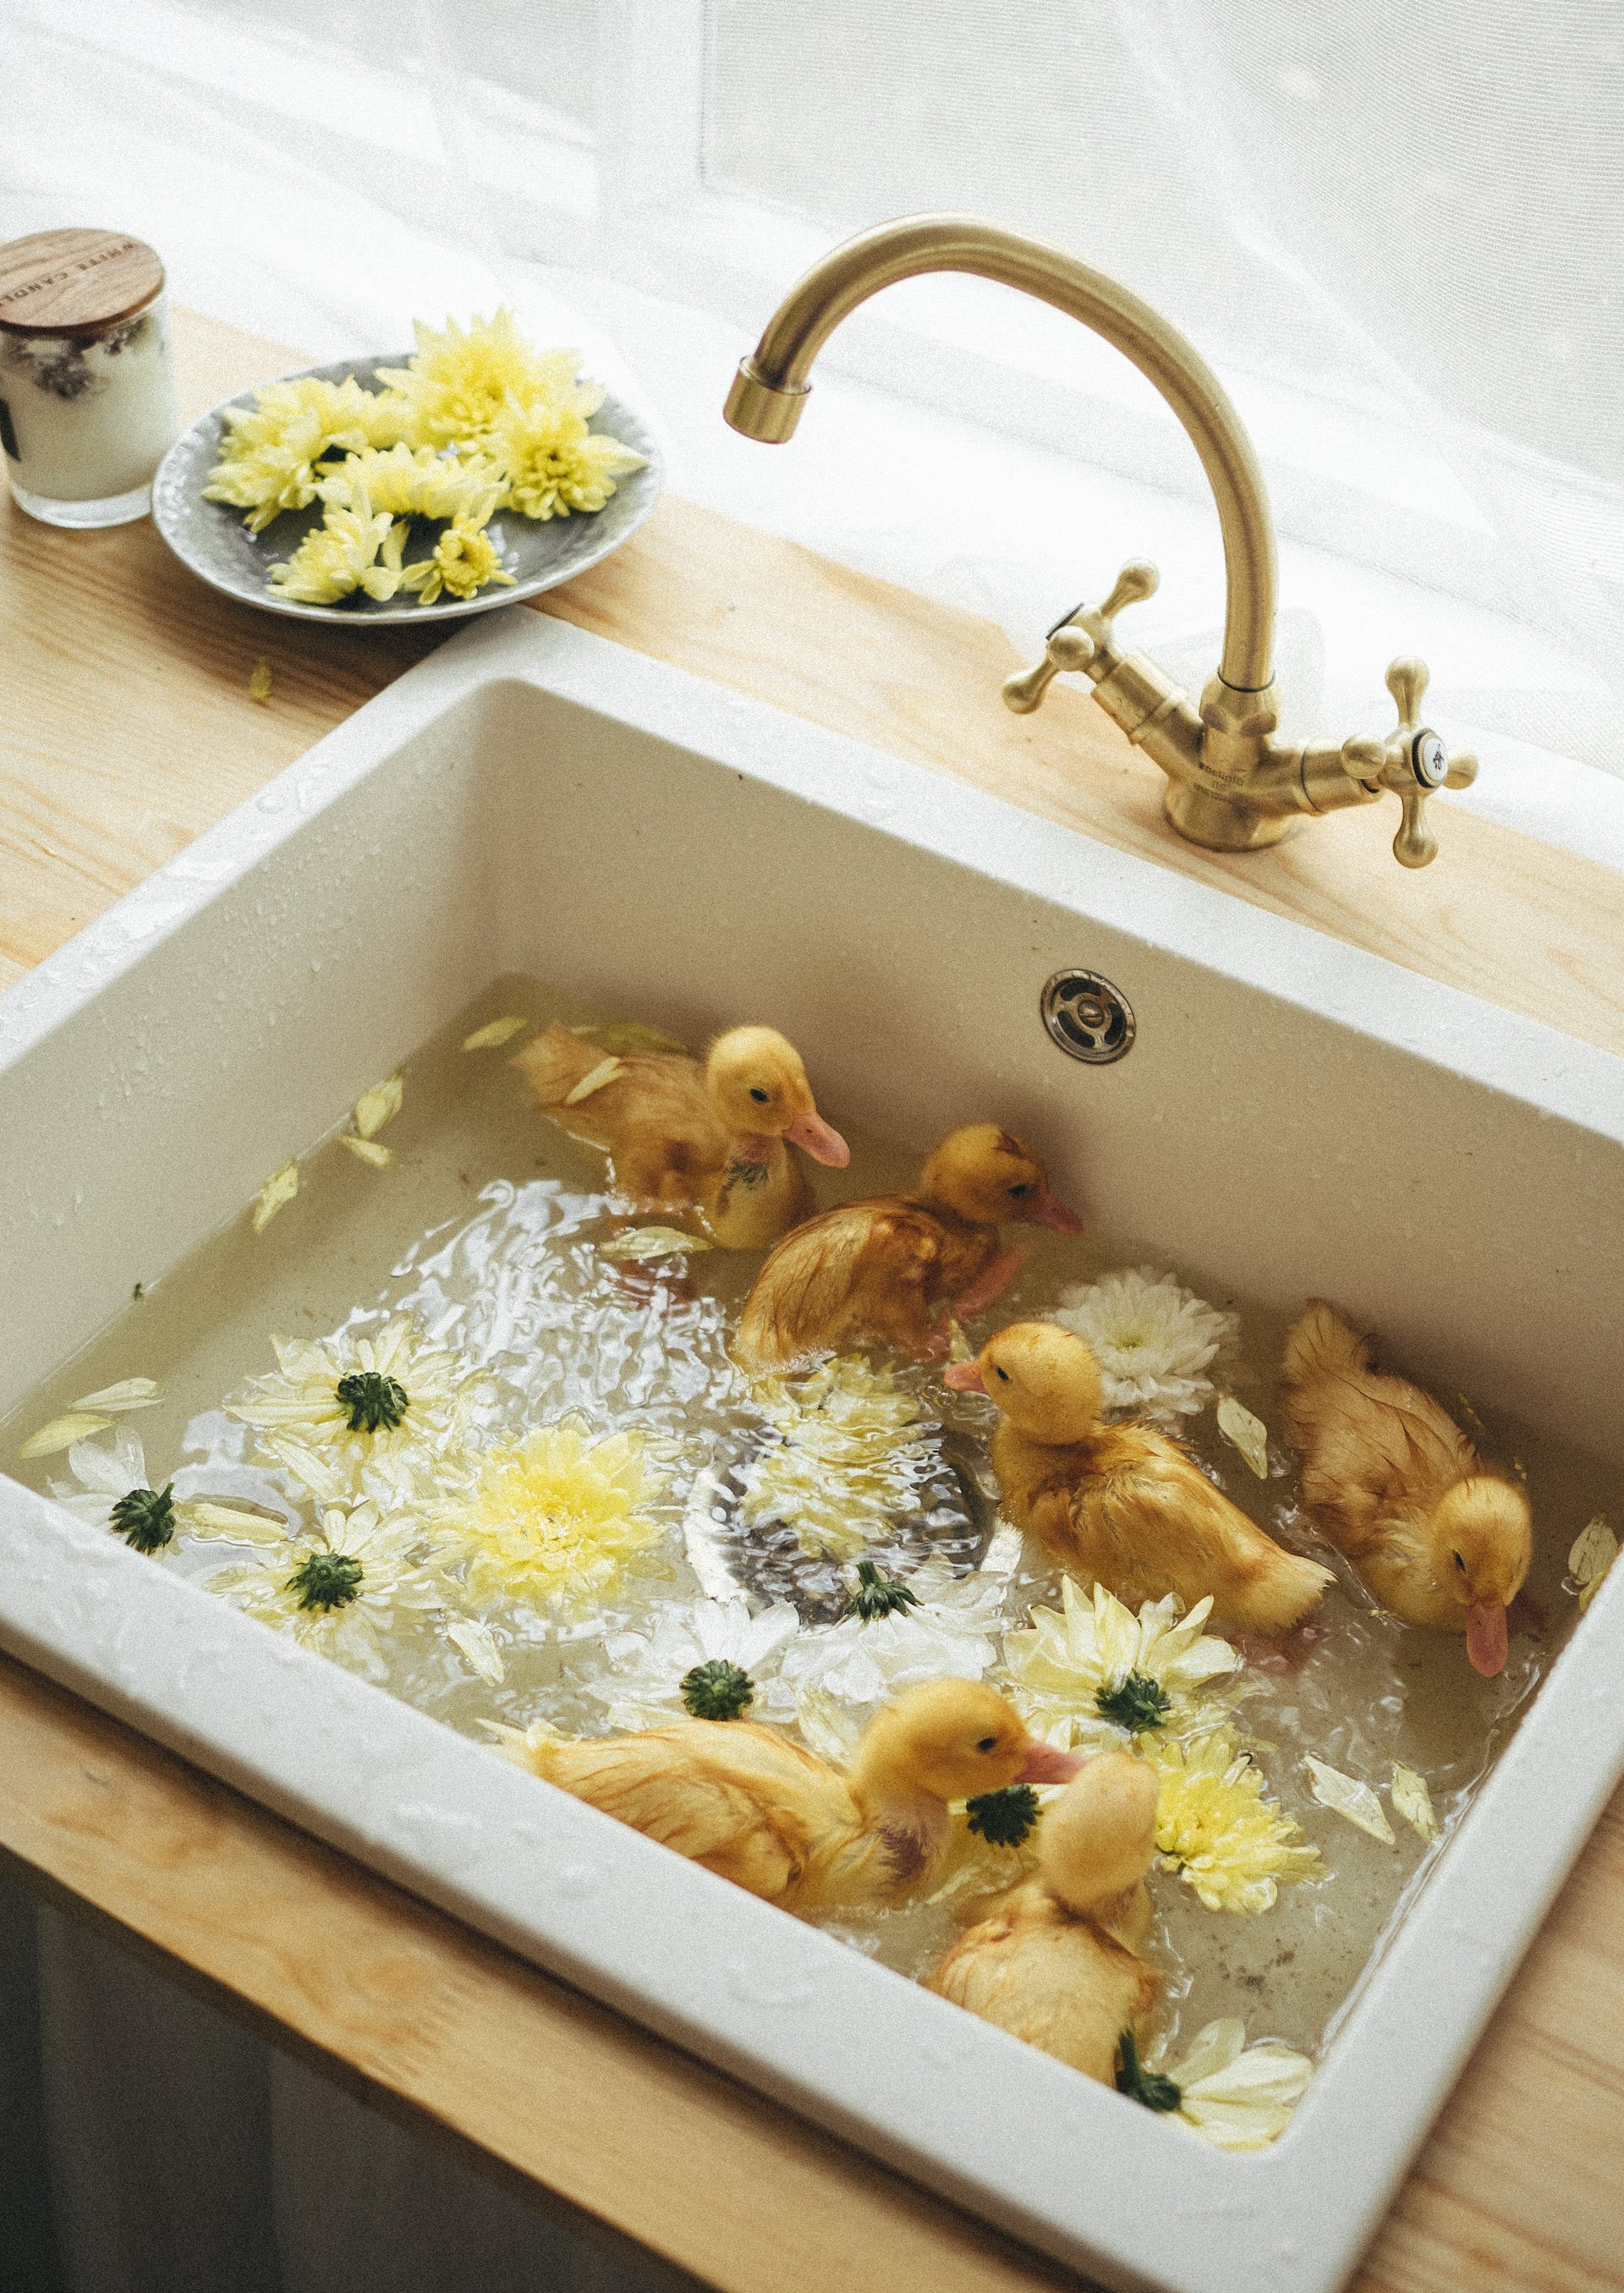 Ducklings in a sink | Source: Pexels